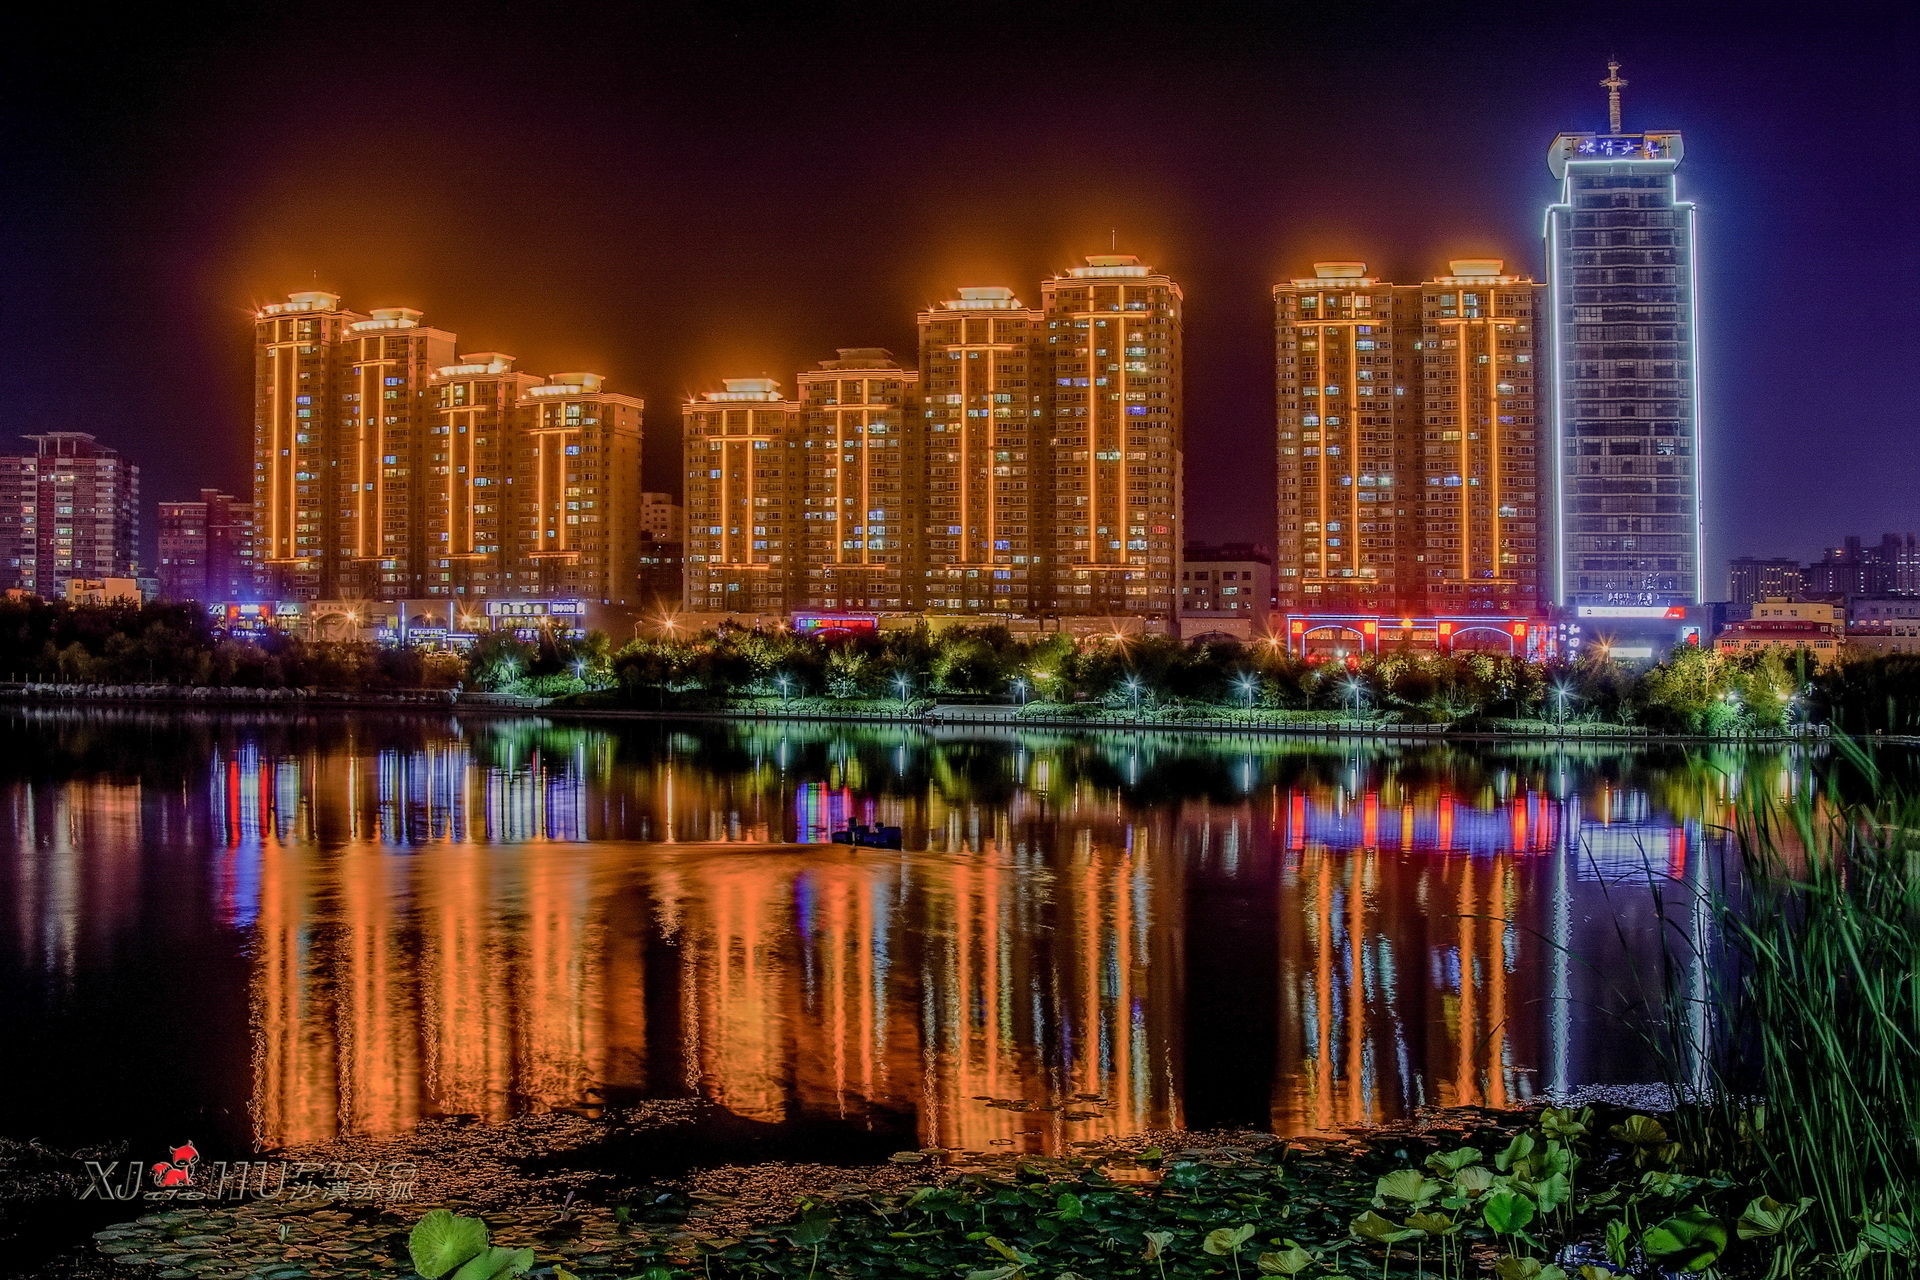 乌鲁木齐夜景 - 乌鲁木齐景点 - 华侨城旅游网